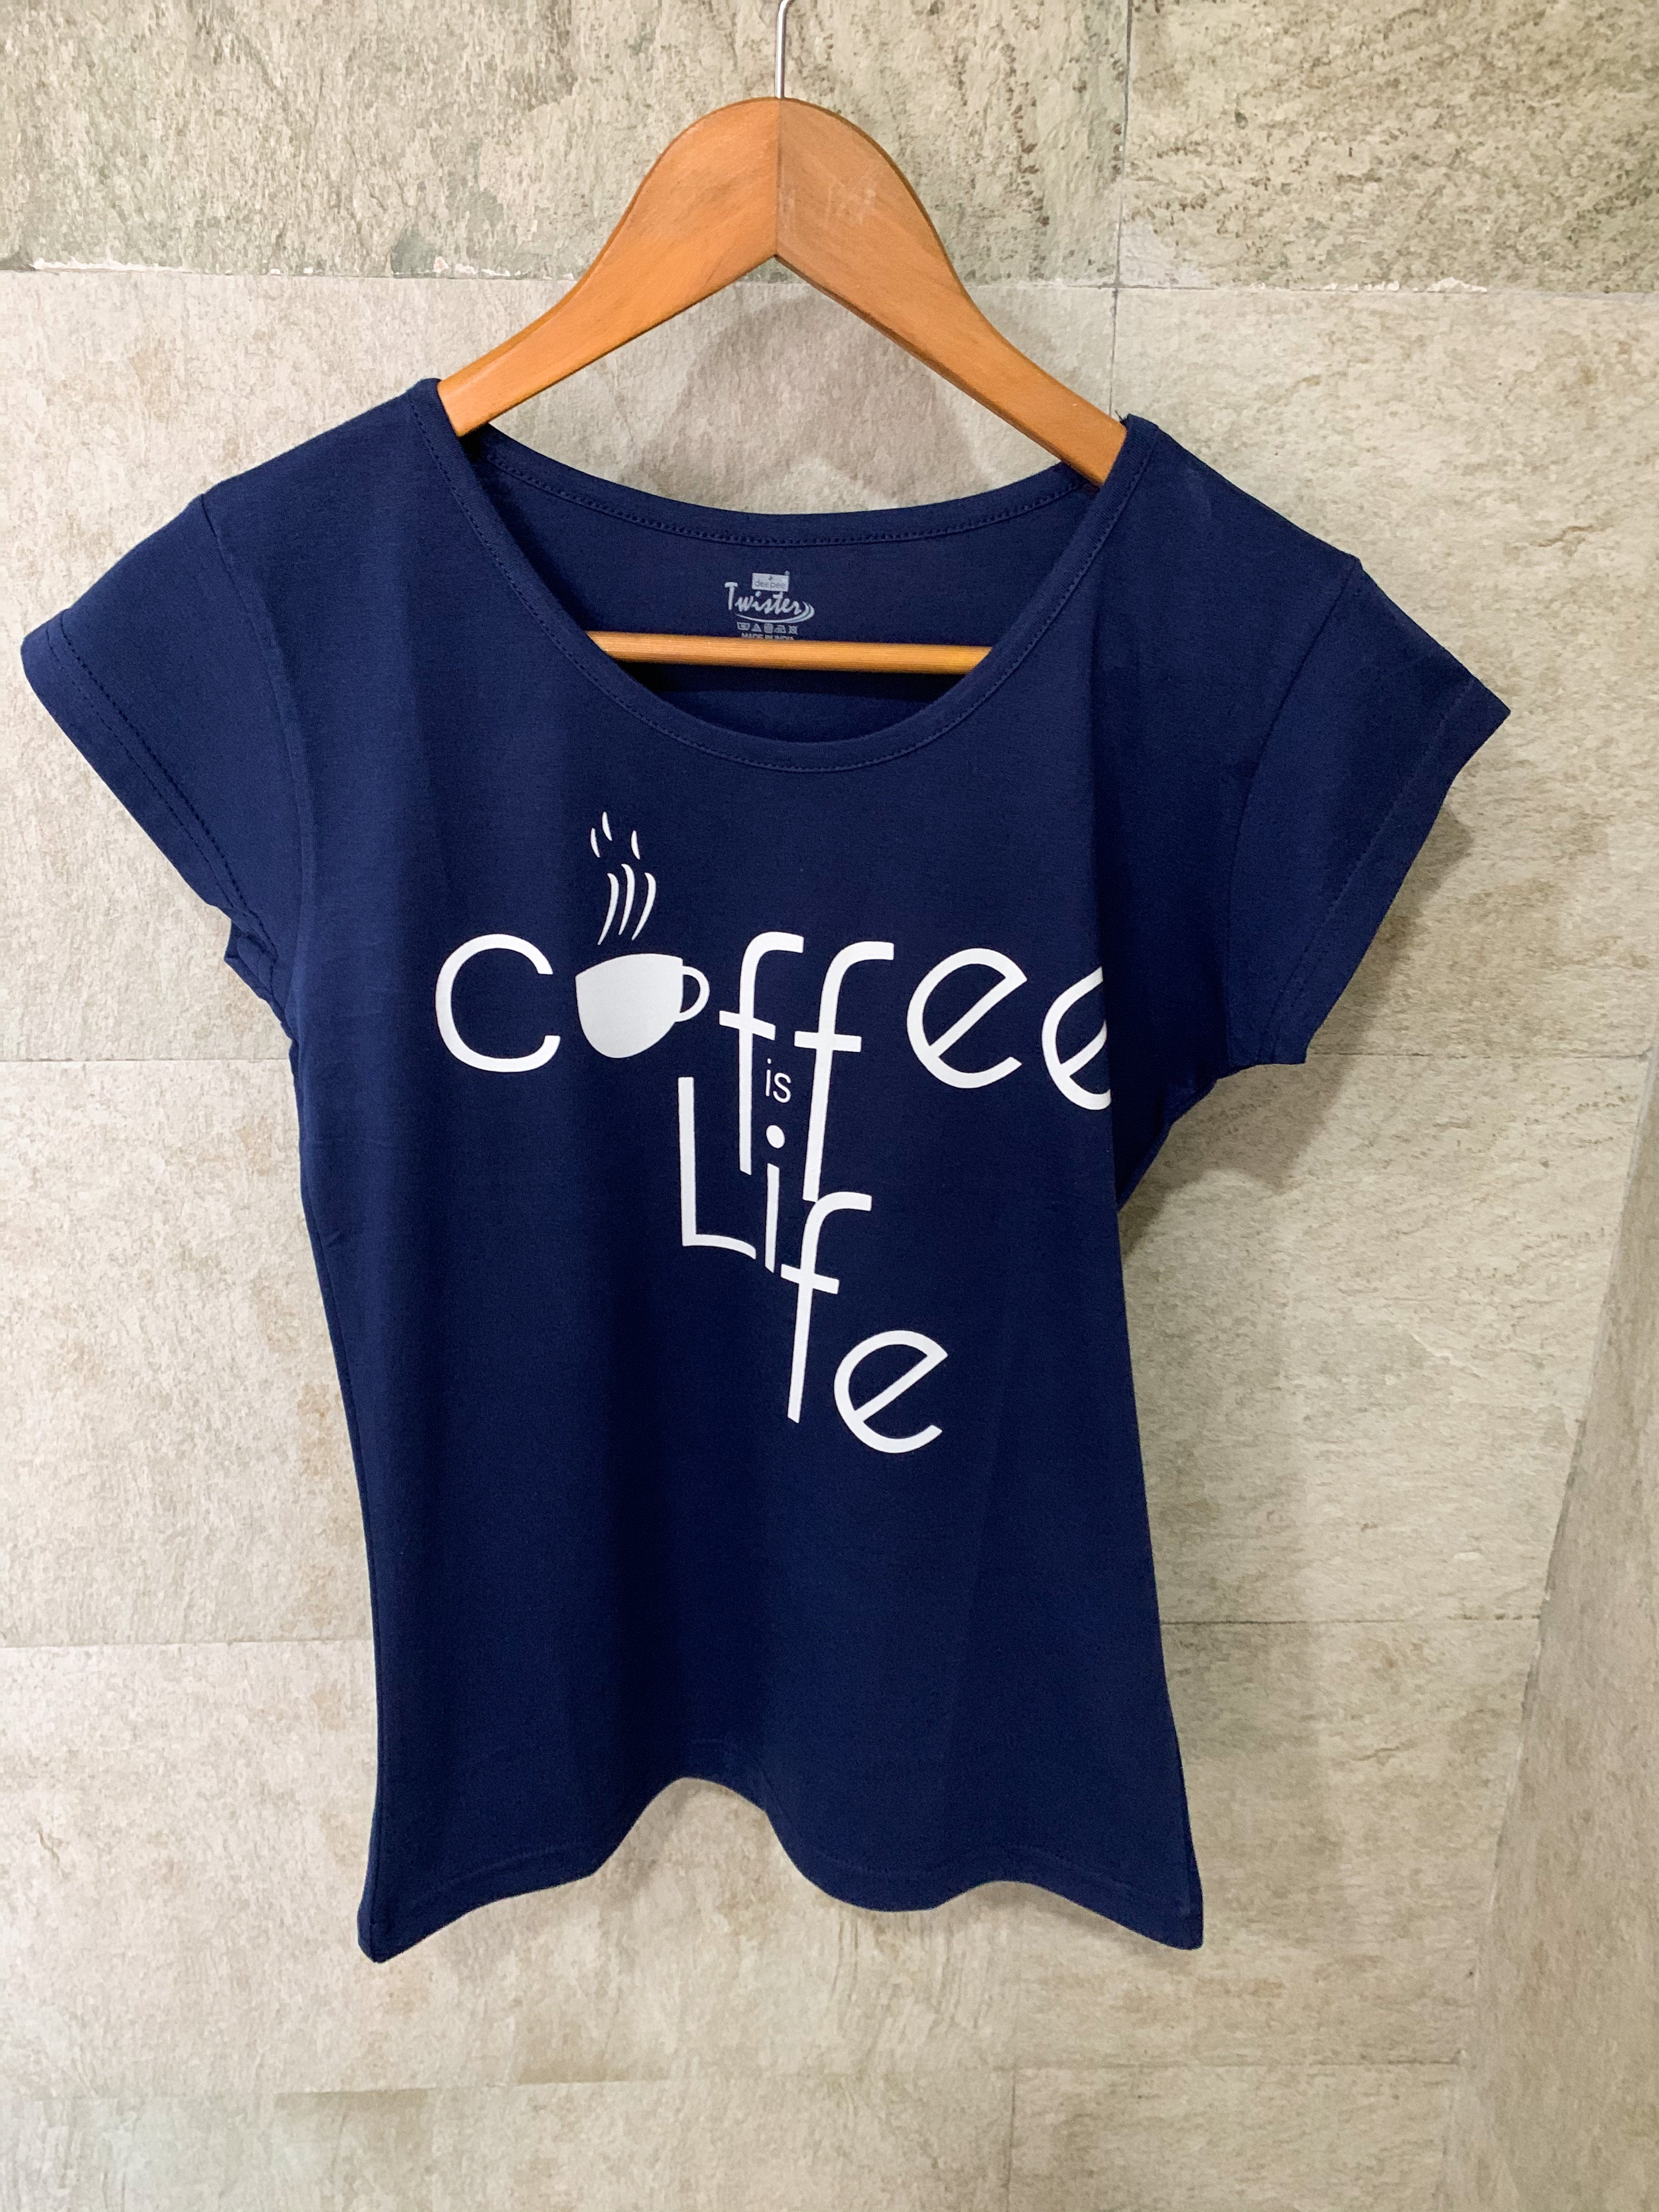 Coffee is Life - Navy Blue Printed Tees